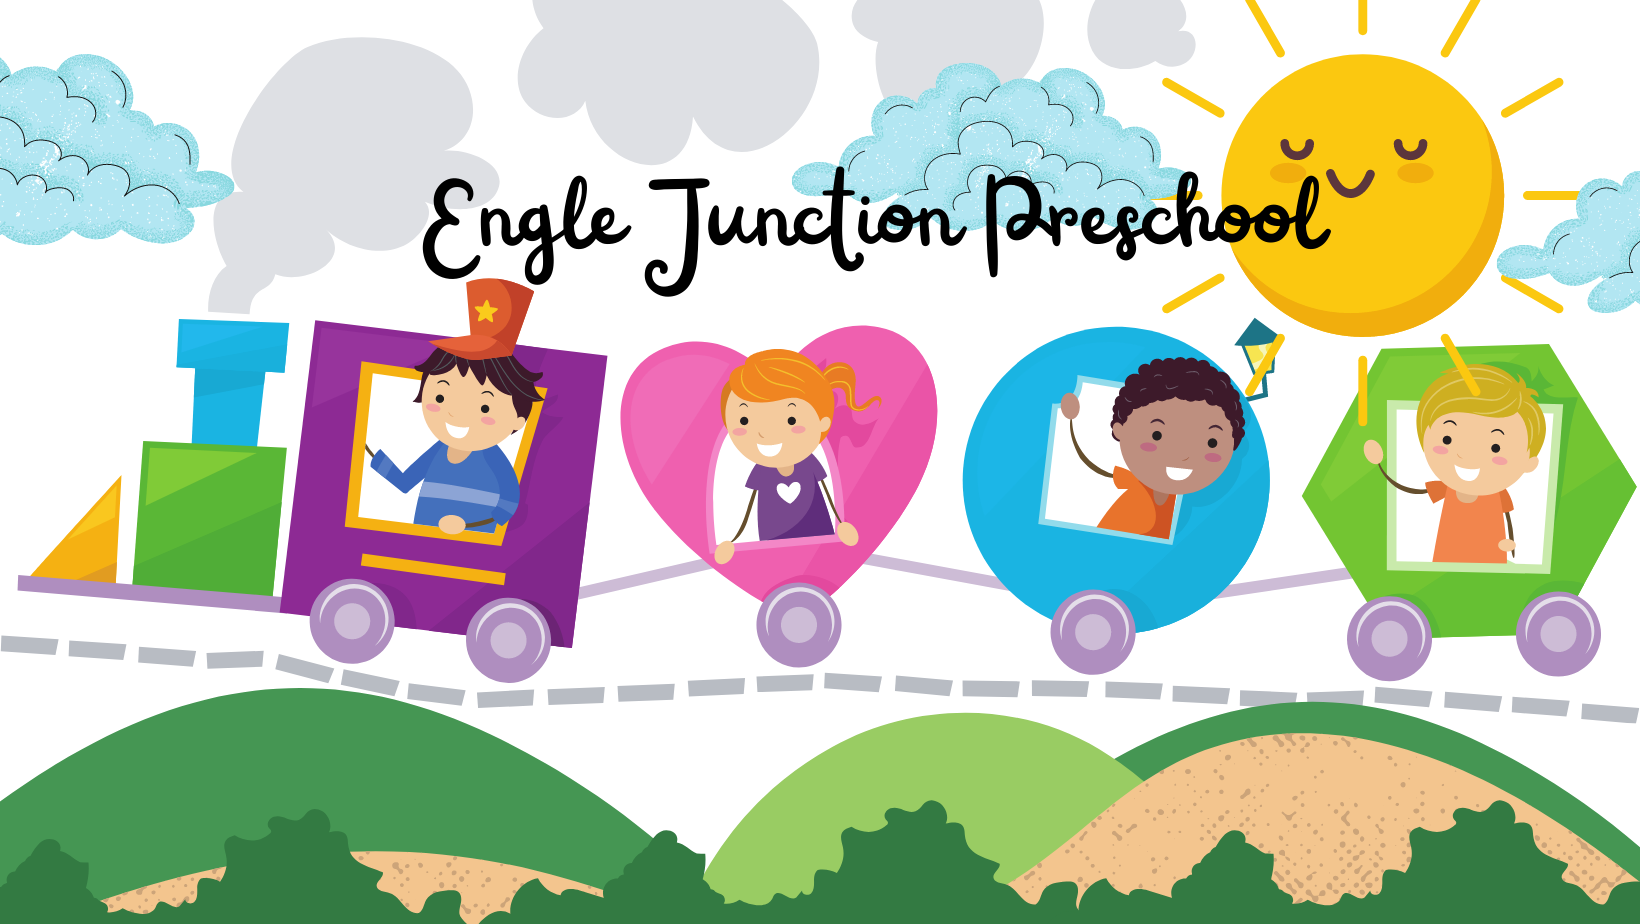 Engle Junction Preschool advertisement